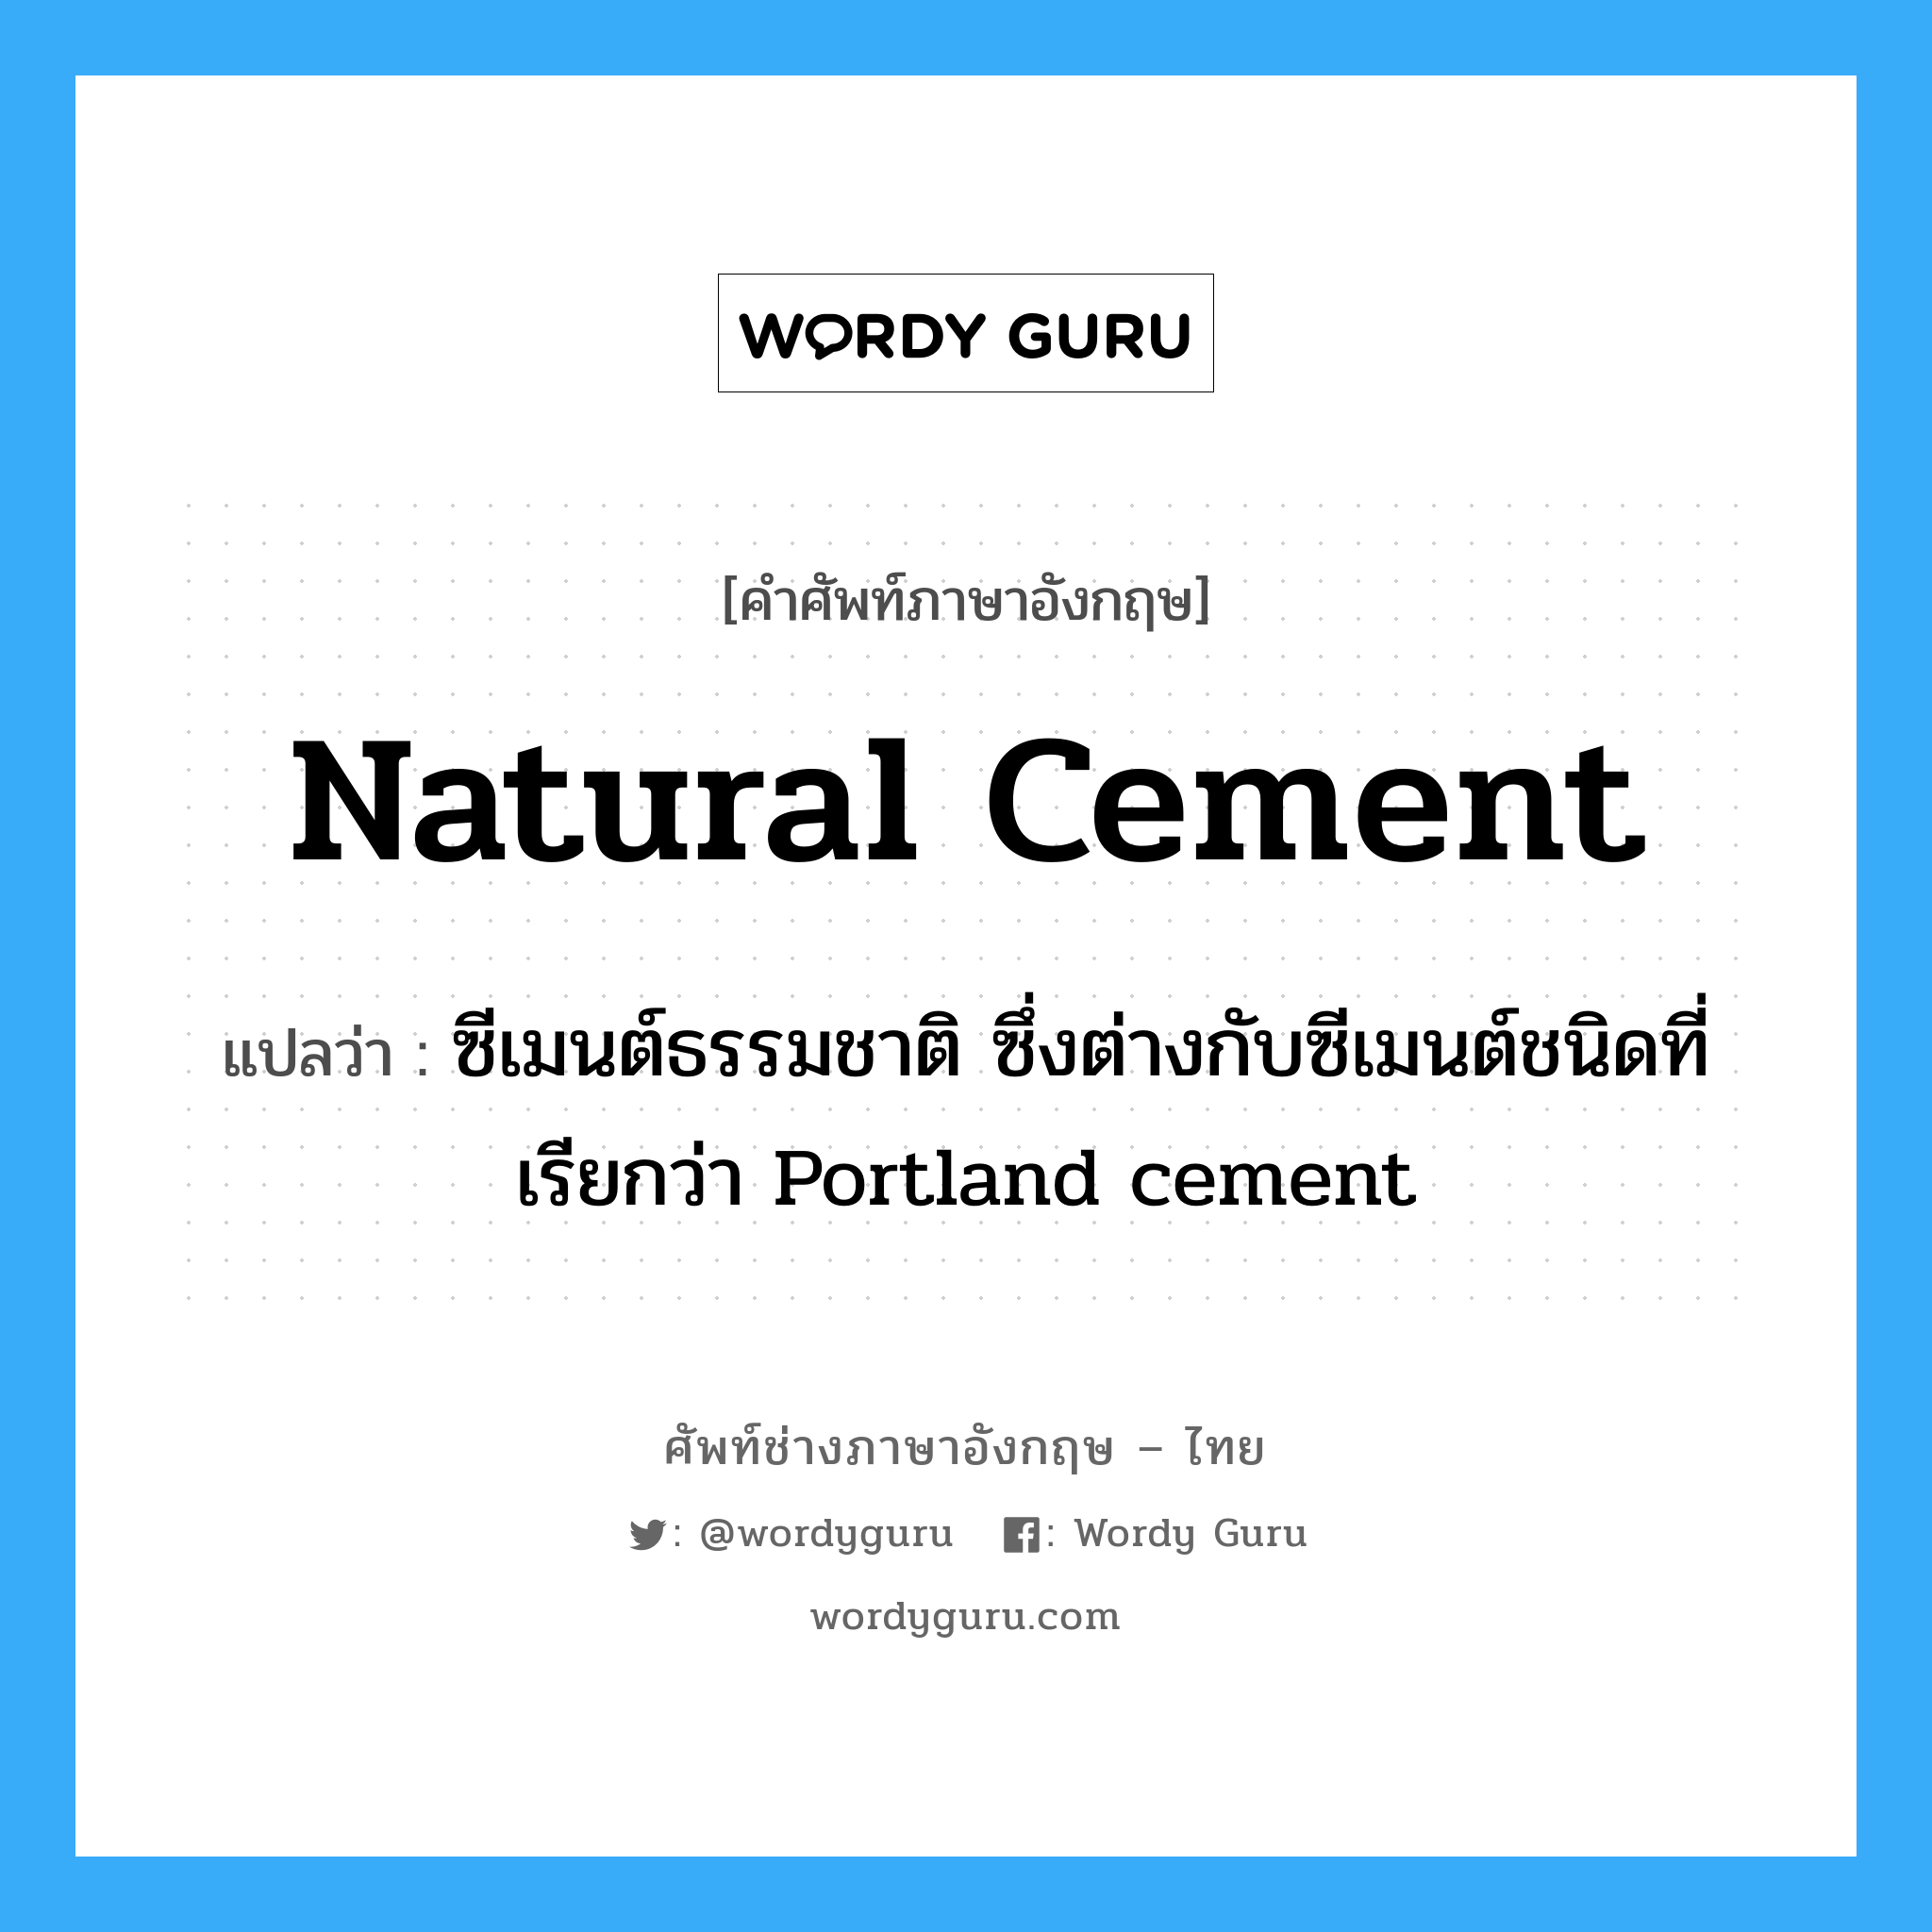 ซีเมนต์ธรรมชาติ ซึ่งต่างกับซีเมนต์ชนิดที่เรียกว่า Portland cement ภาษาอังกฤษ?, คำศัพท์ช่างภาษาอังกฤษ - ไทย ซีเมนต์ธรรมชาติ ซึ่งต่างกับซีเมนต์ชนิดที่เรียกว่า Portland cement คำศัพท์ภาษาอังกฤษ ซีเมนต์ธรรมชาติ ซึ่งต่างกับซีเมนต์ชนิดที่เรียกว่า Portland cement แปลว่า natural cement